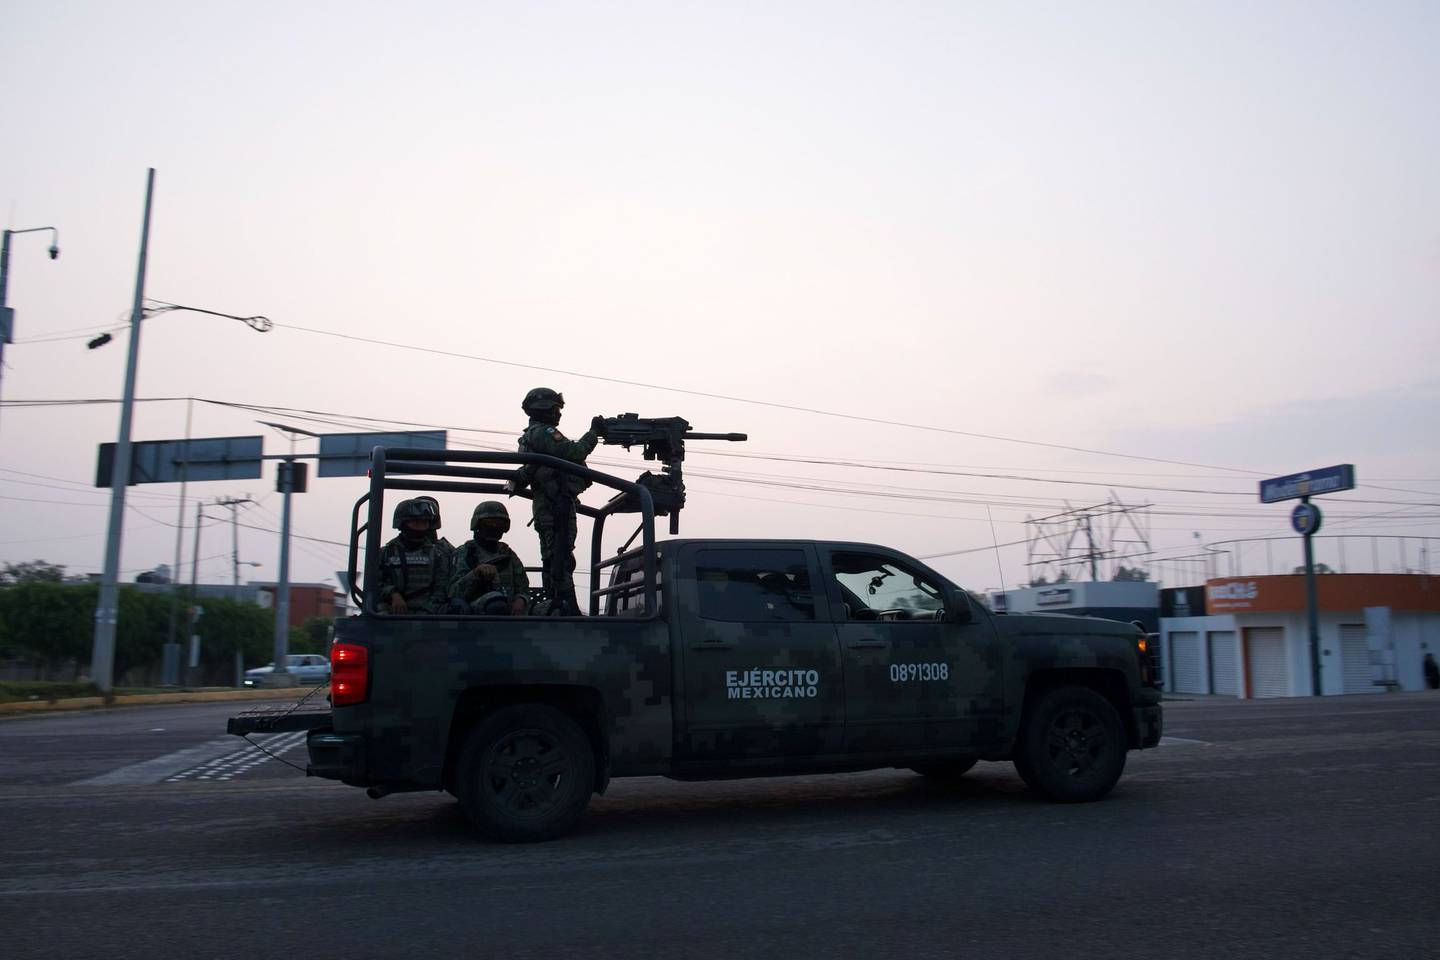 FRONTERA COMALAPA, CHIAPAS, 30MAYO2023.- Arrancó el Despliegue de Fuerza de Tareas dirigido por la SEDENA acompañado por la Guardia Nacional, Policía Estatal y Municipal rumbo a la región que ha sido azotada por la violencia entre grupos armados en incremento desde el año 2021 en comunidades fronterizas a Guatemala. El día 22 de Mayo del presente año estos grupos se han enfrentado sin descanso y con armamentos cada vez más altos, lo cual obligó a la población a desplazarse para salvaguardar sus vidas. Al entrar al municipio el convoy dirigido por el ejército nacional estos se encaminaron al ejido Joaquín Miguel Gutierrez, donde se encontraron con pobladores de la región y estos les impidieron el paso argumentando que el problema y la violencia está en la cabecera municipal y otros poblados. Después de un tiempo de diálogo sin acuerdos, el ejército empezó a avanzar a lo cual los pobladores respondieron con palos y piedras negando la entrada, elementos del ejército lanzaban bombas de gas lacrimógeno y las piedras de regresó para seguir con su incursión a la comunidad. 
FOTO: ISABEL MATEOS /CUARTOSCURO.COM